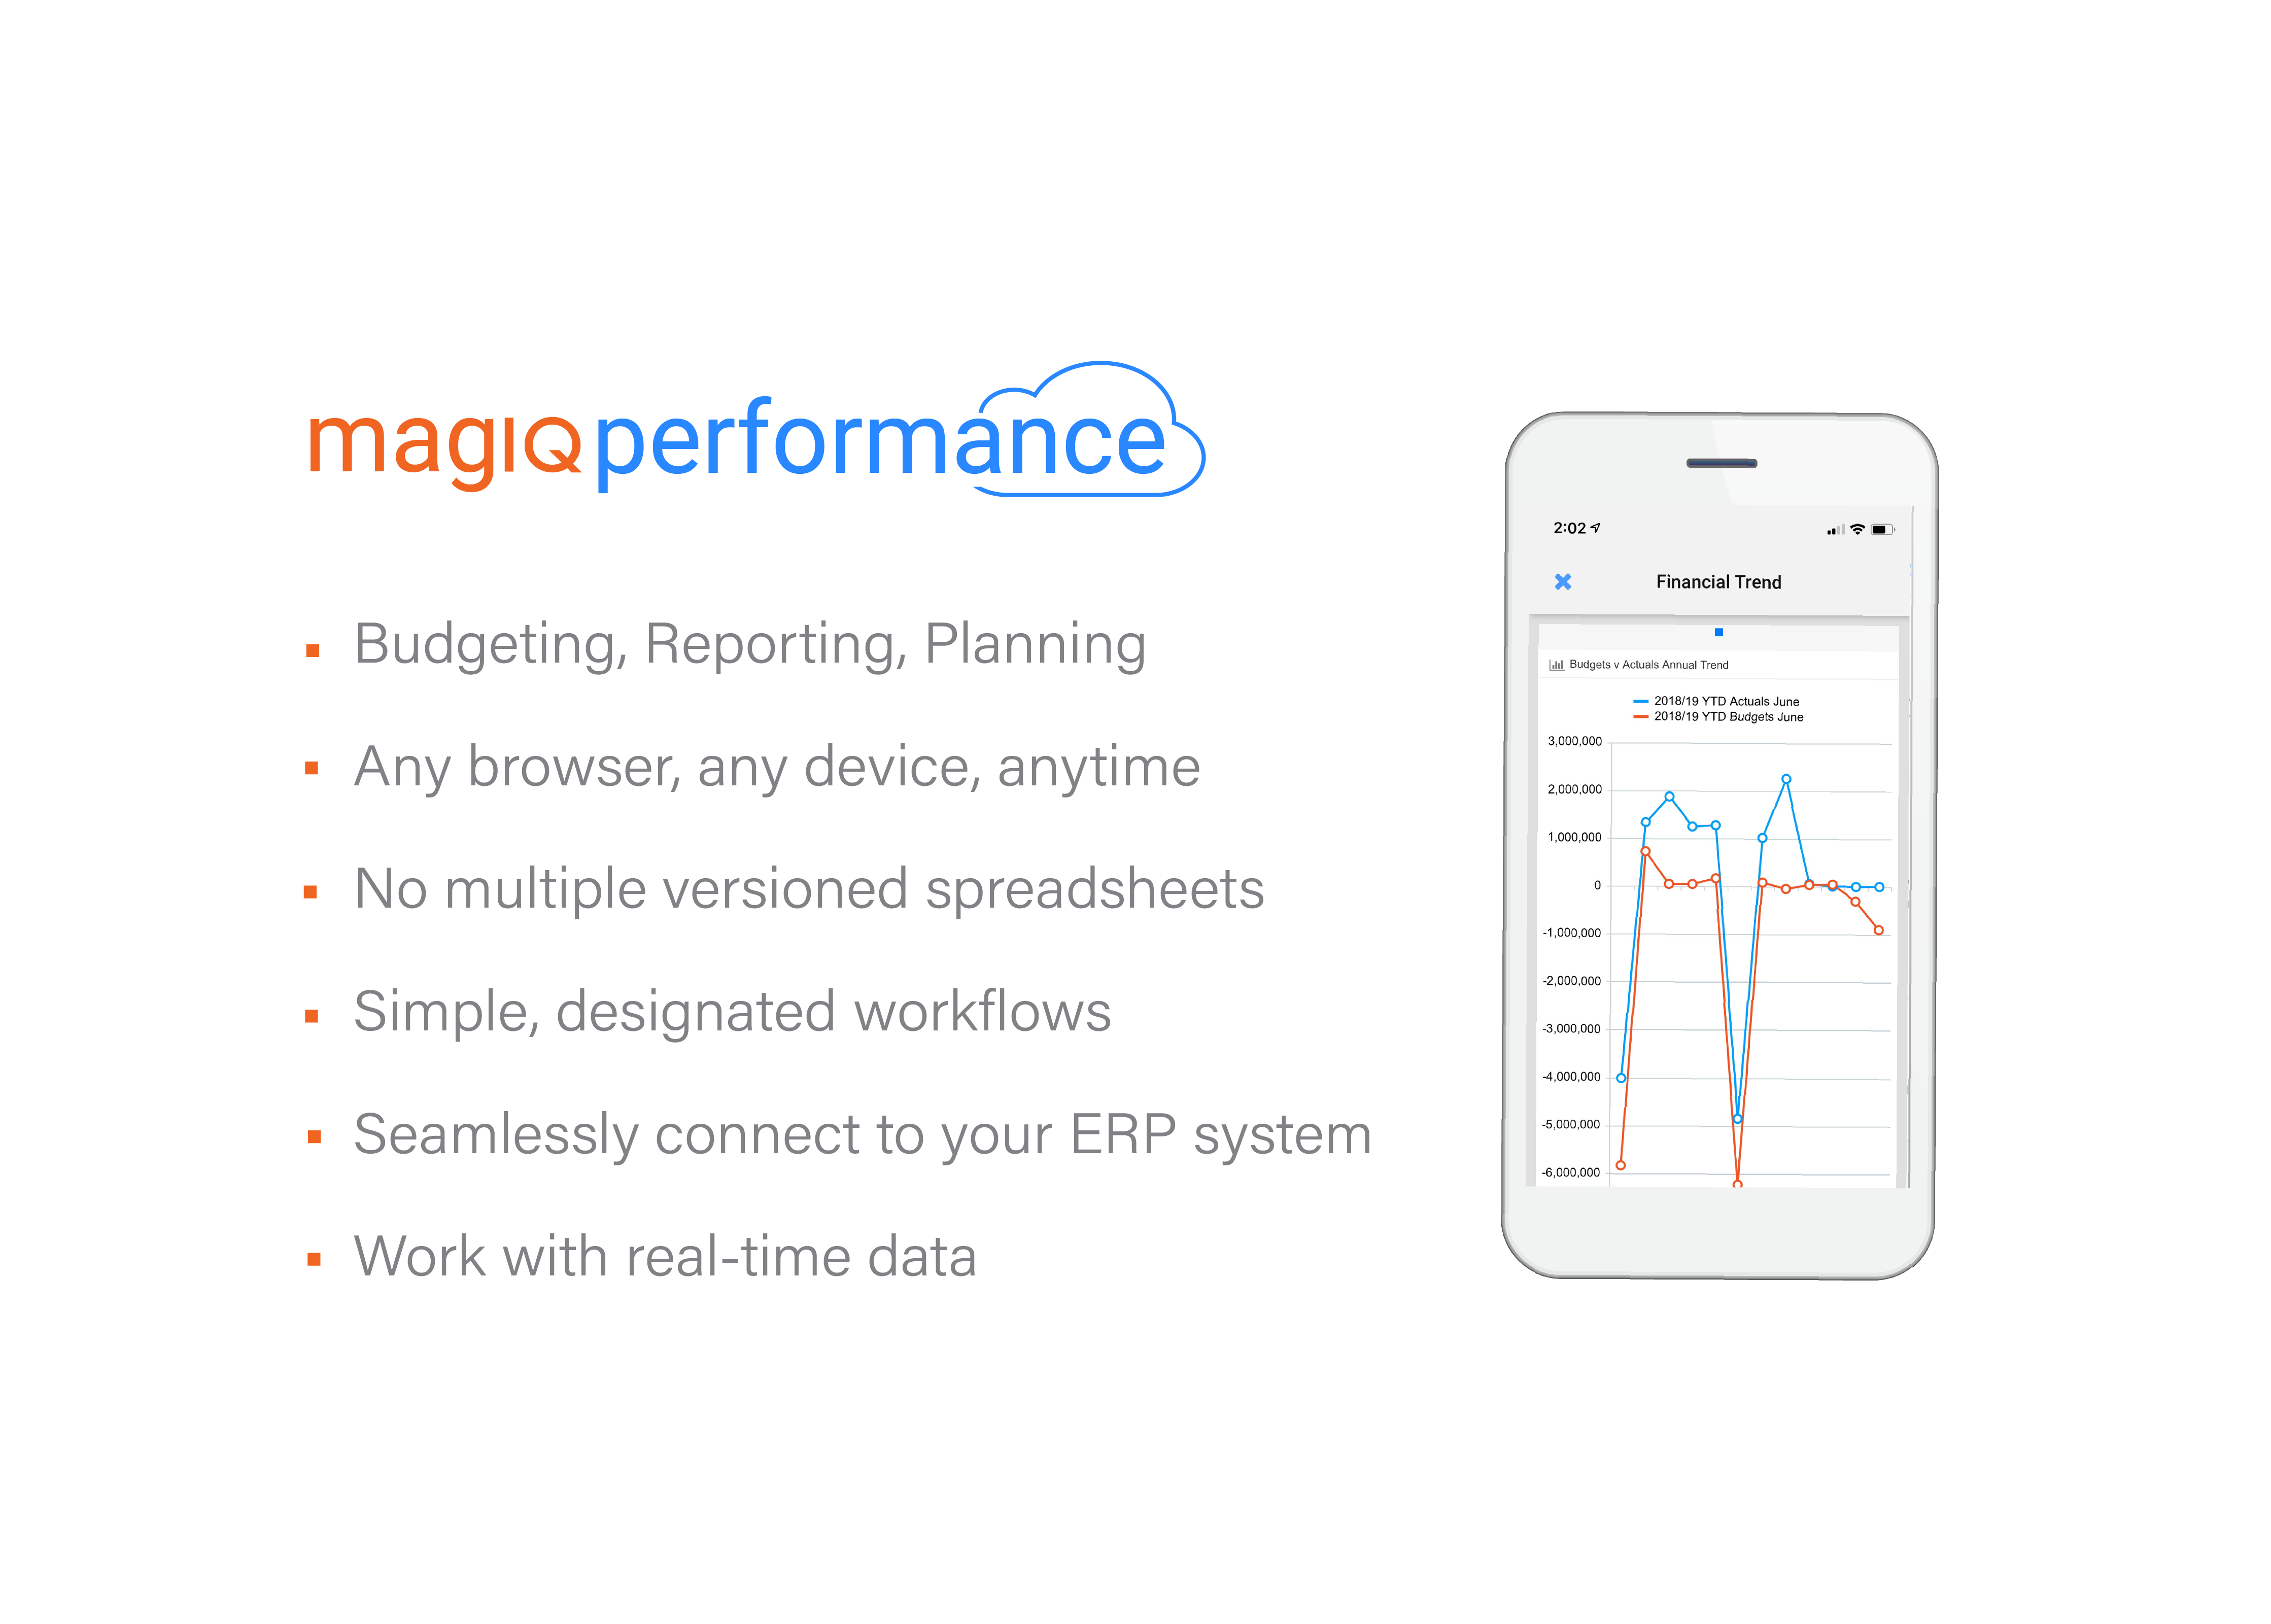 MAGIQ Performance Cloud Benefits